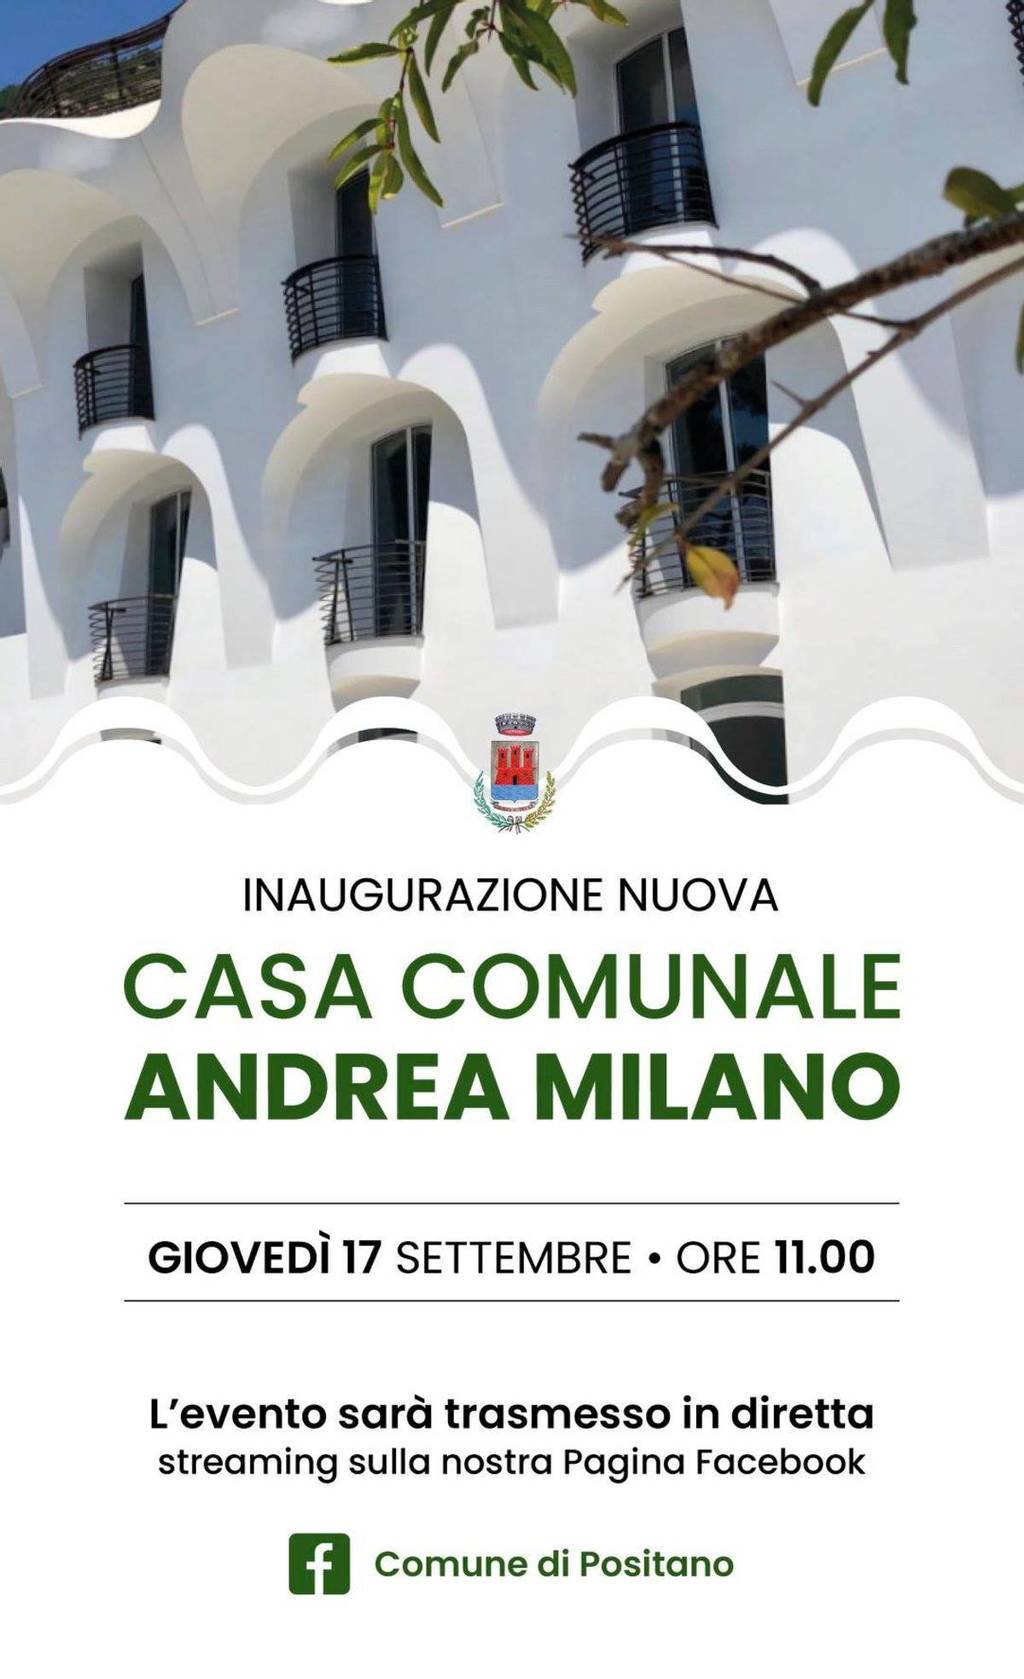 Inaugurazione nuova Casa Comunale "Andrea Milano"